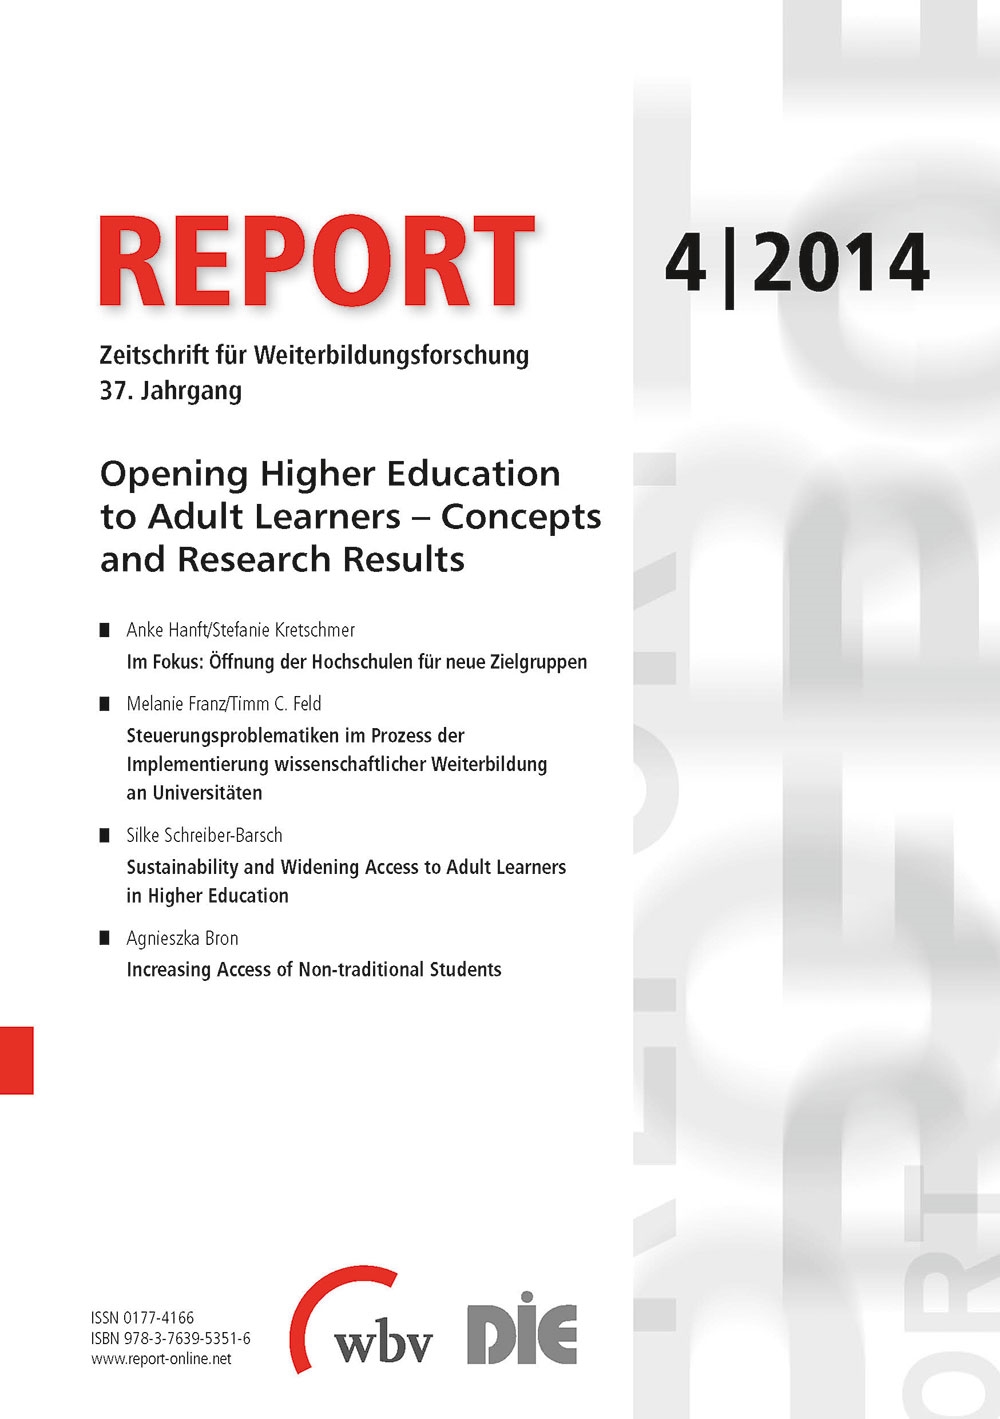 REPORT - Zeitschrift für Weiterbildungsforschung 04/2014